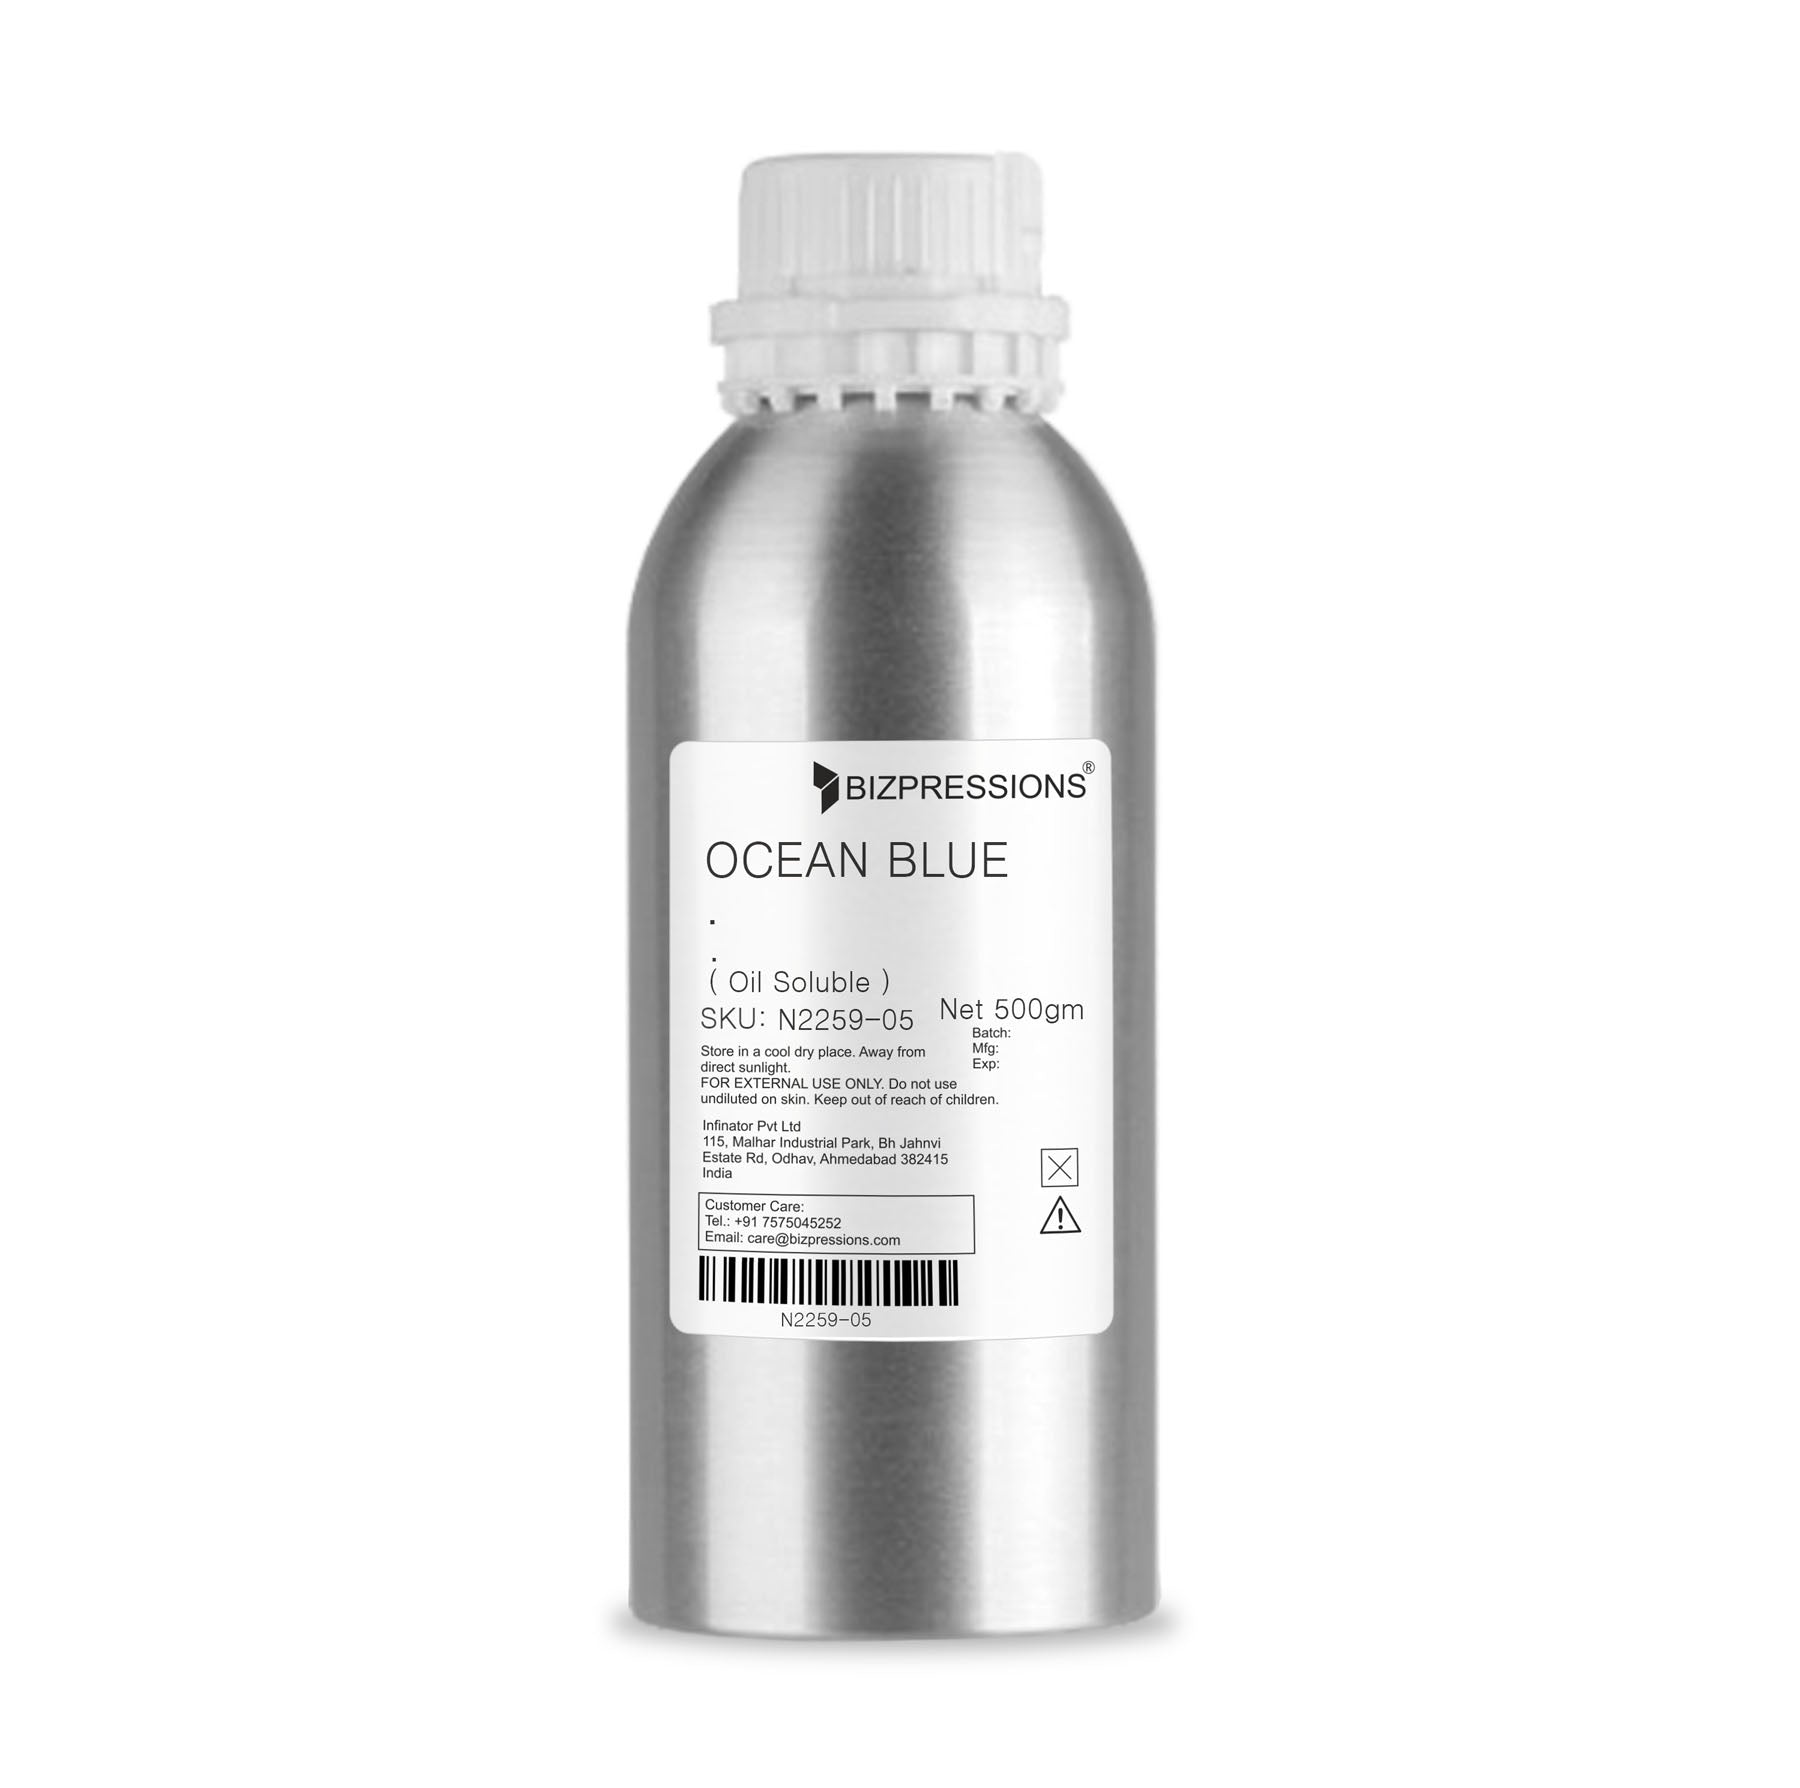 OCEAN BLUE - Fragrance ( Oil Soluble ) - 500 gm